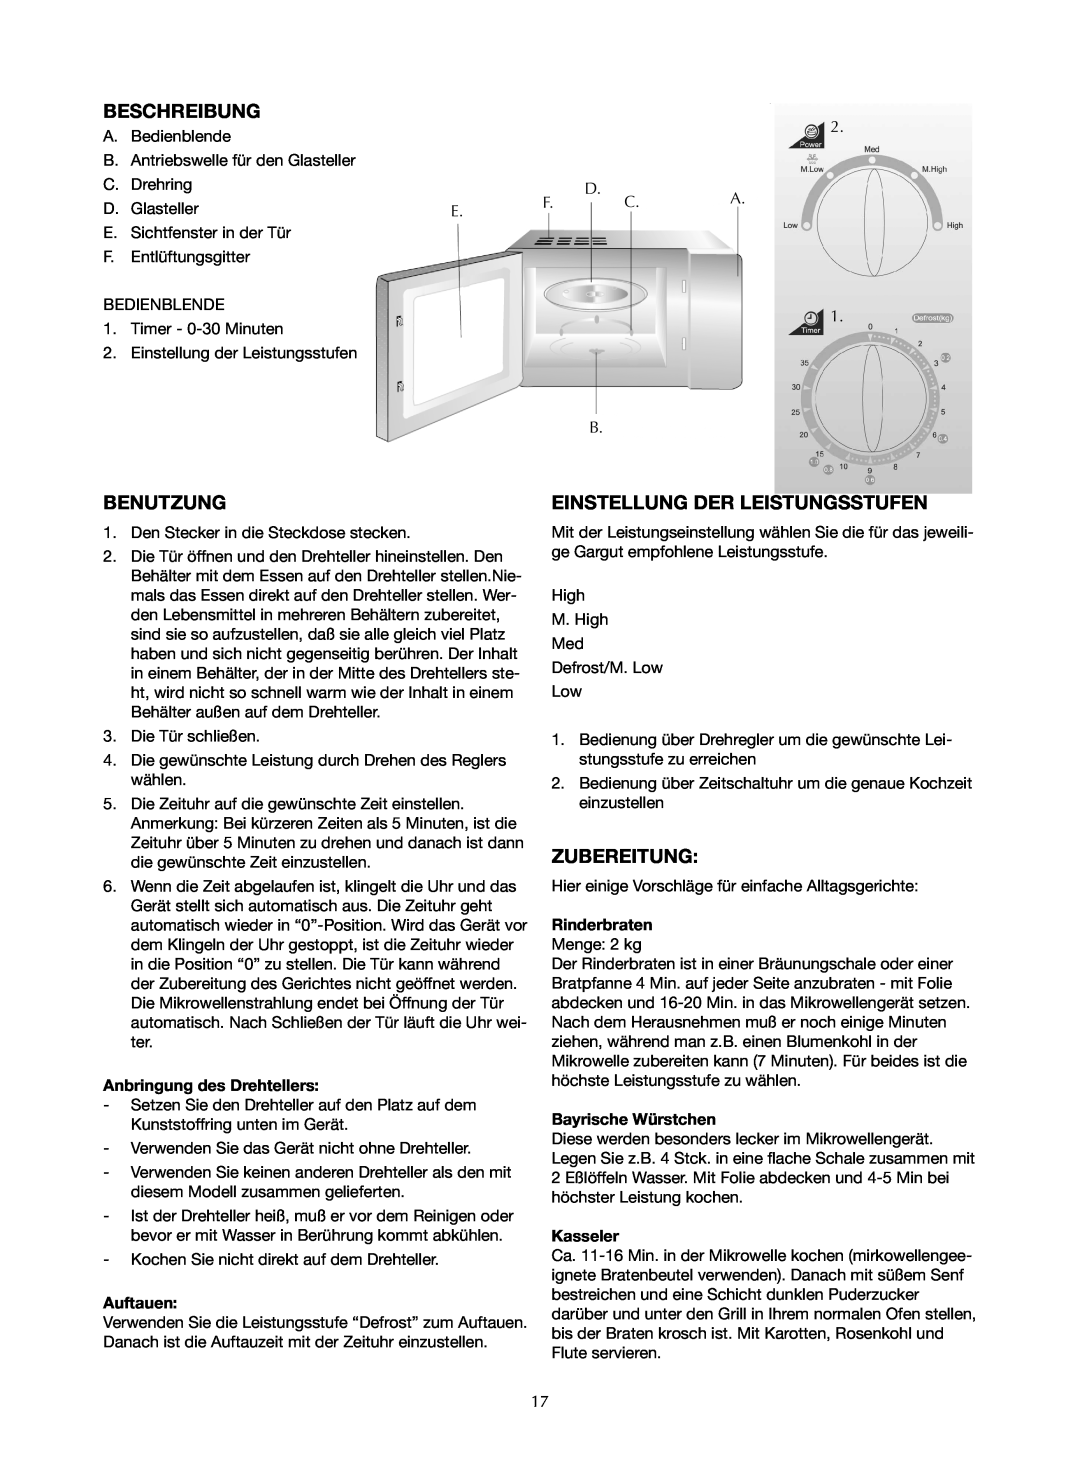 Ide Line 753-122 manual Beschreibung, Benutzung, Einstellung Der Leistungsstufen, Zubereitung, Anbringung des Drehtellers 